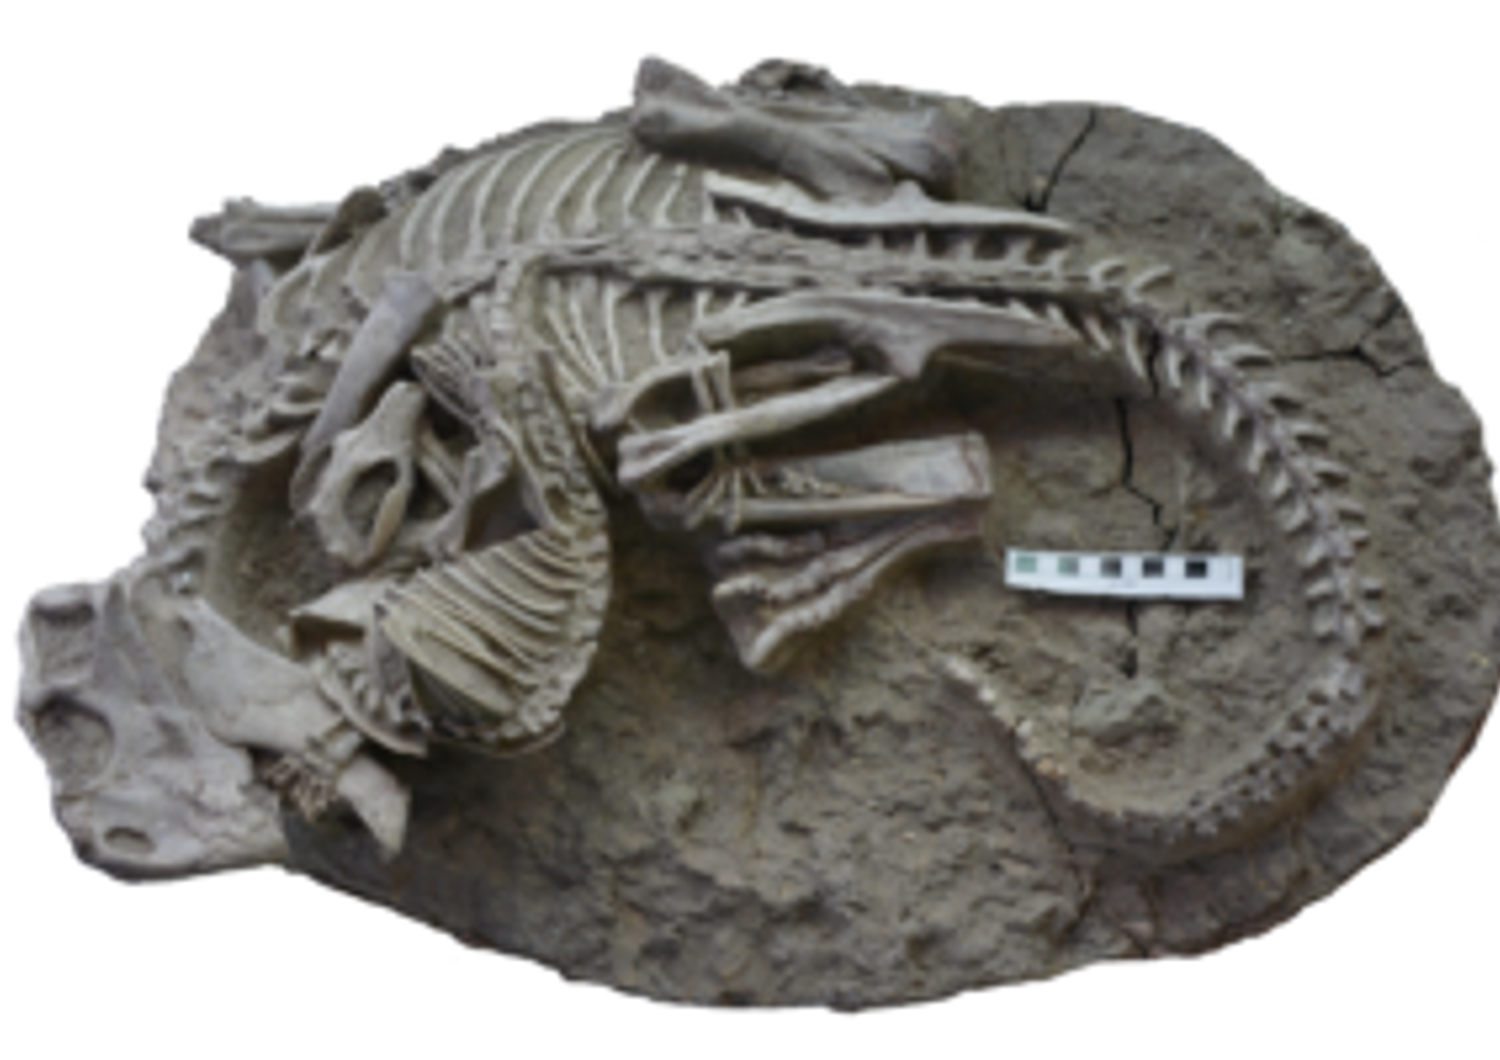 Il raro fossile che documenta l'attacco del carnivoro al dinosauro&nbsp;